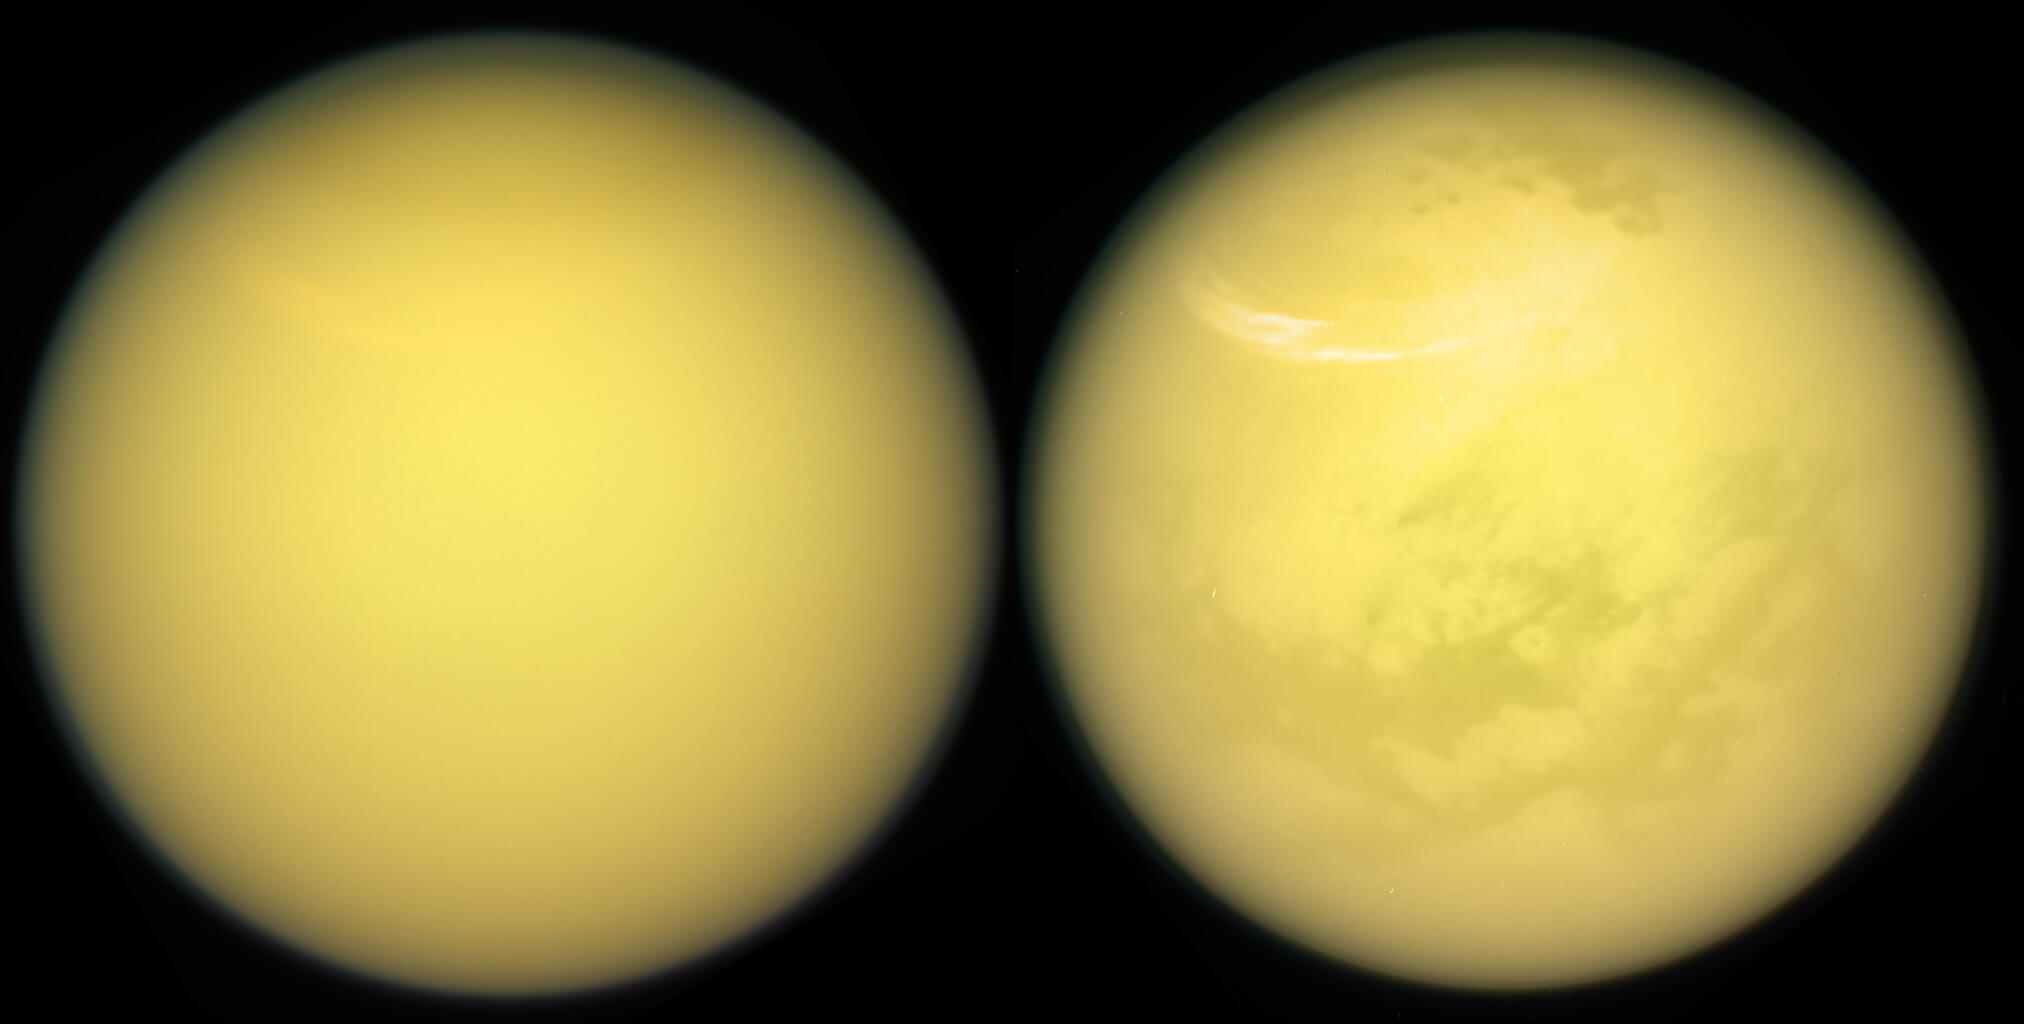 كل ما تريد معرفته عن بحيرات الميثان على تيتان ، ولكن الخوف من أن نسأل